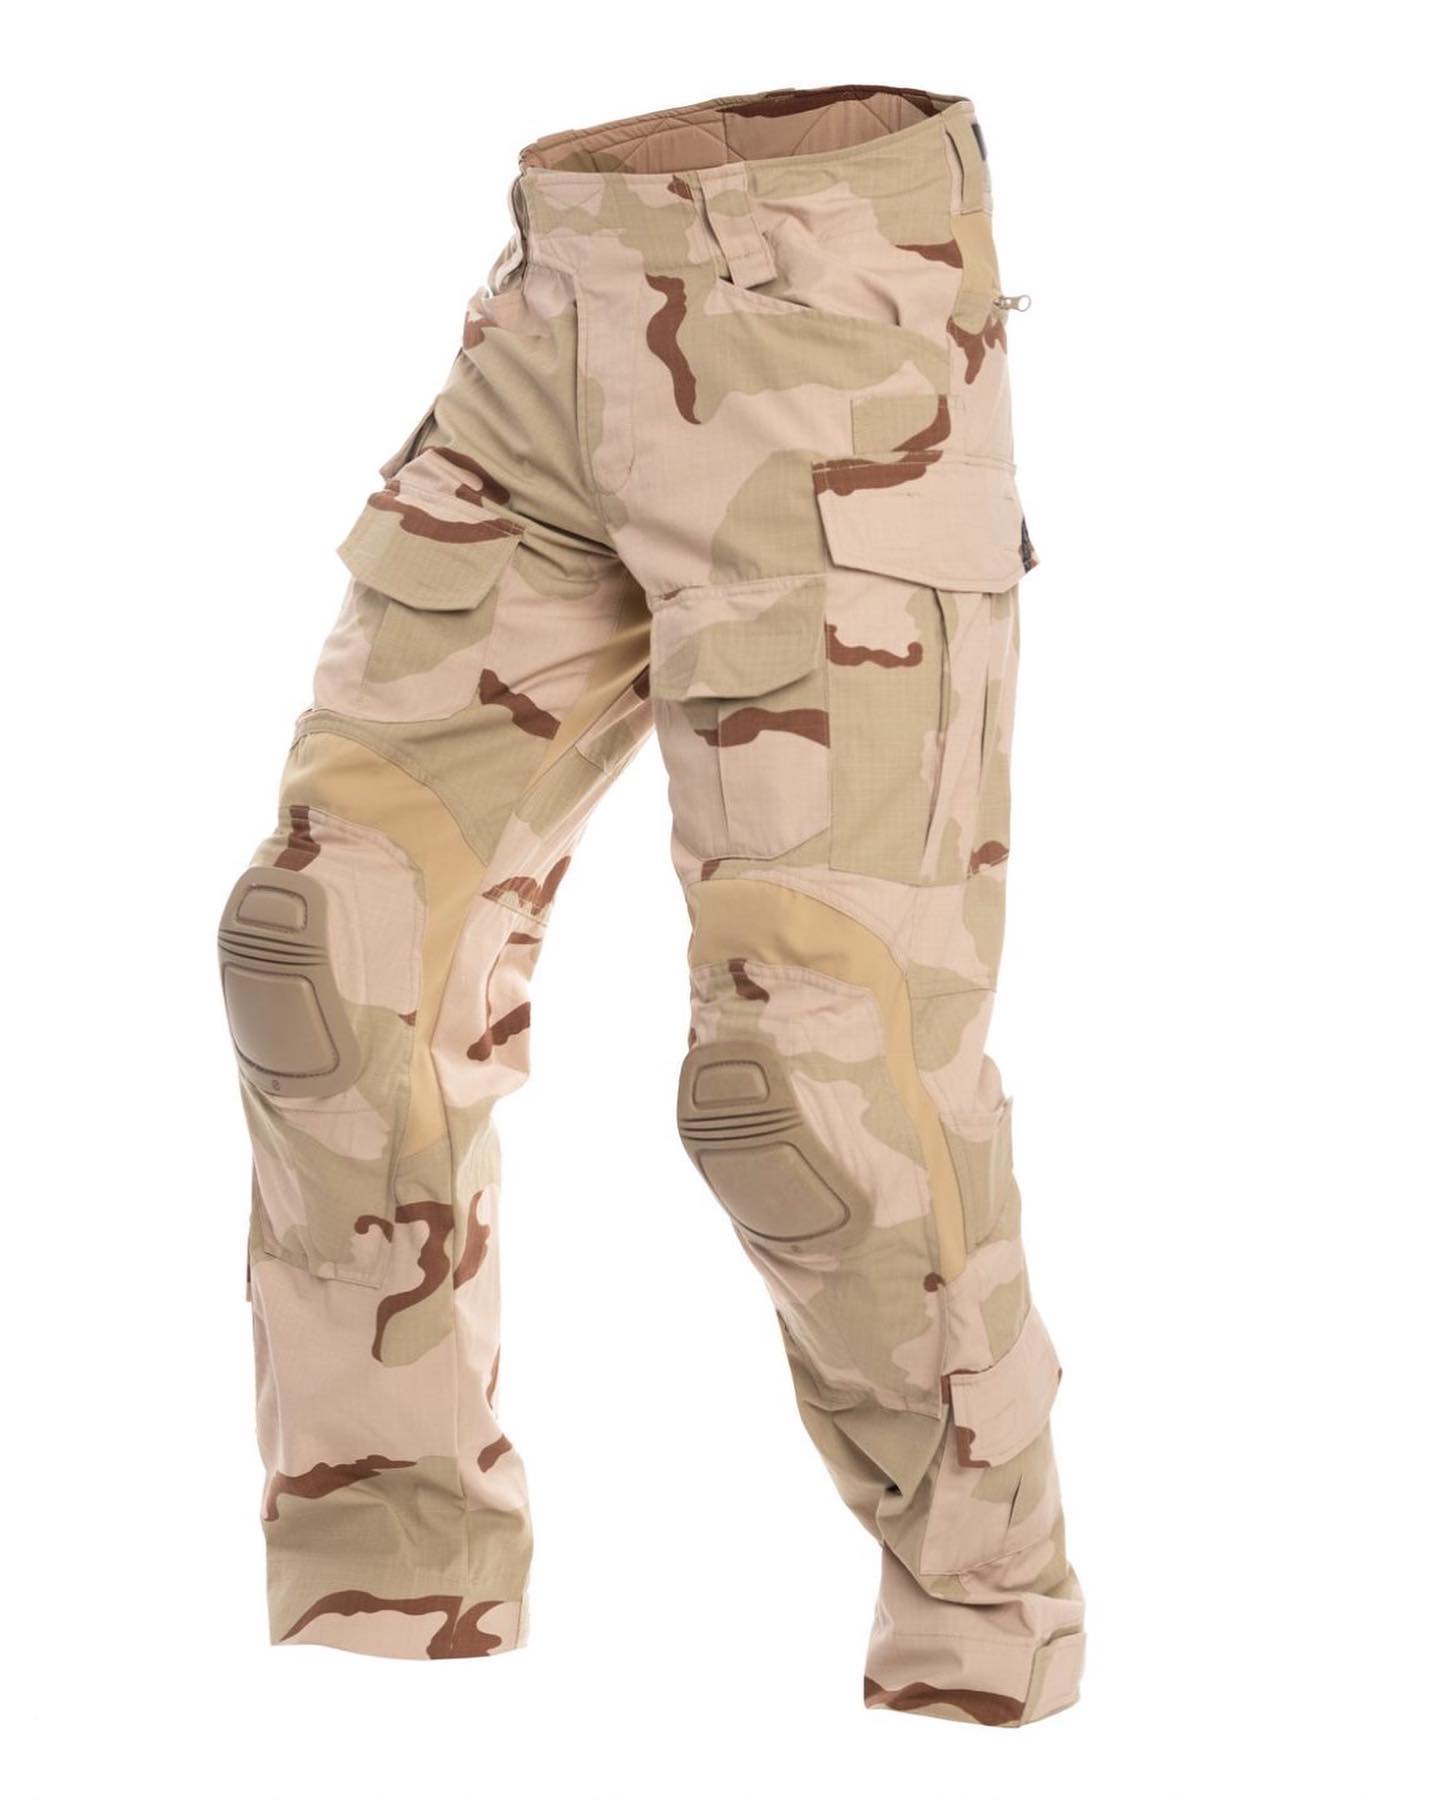 DCU G3 Combat Pants and Shirts